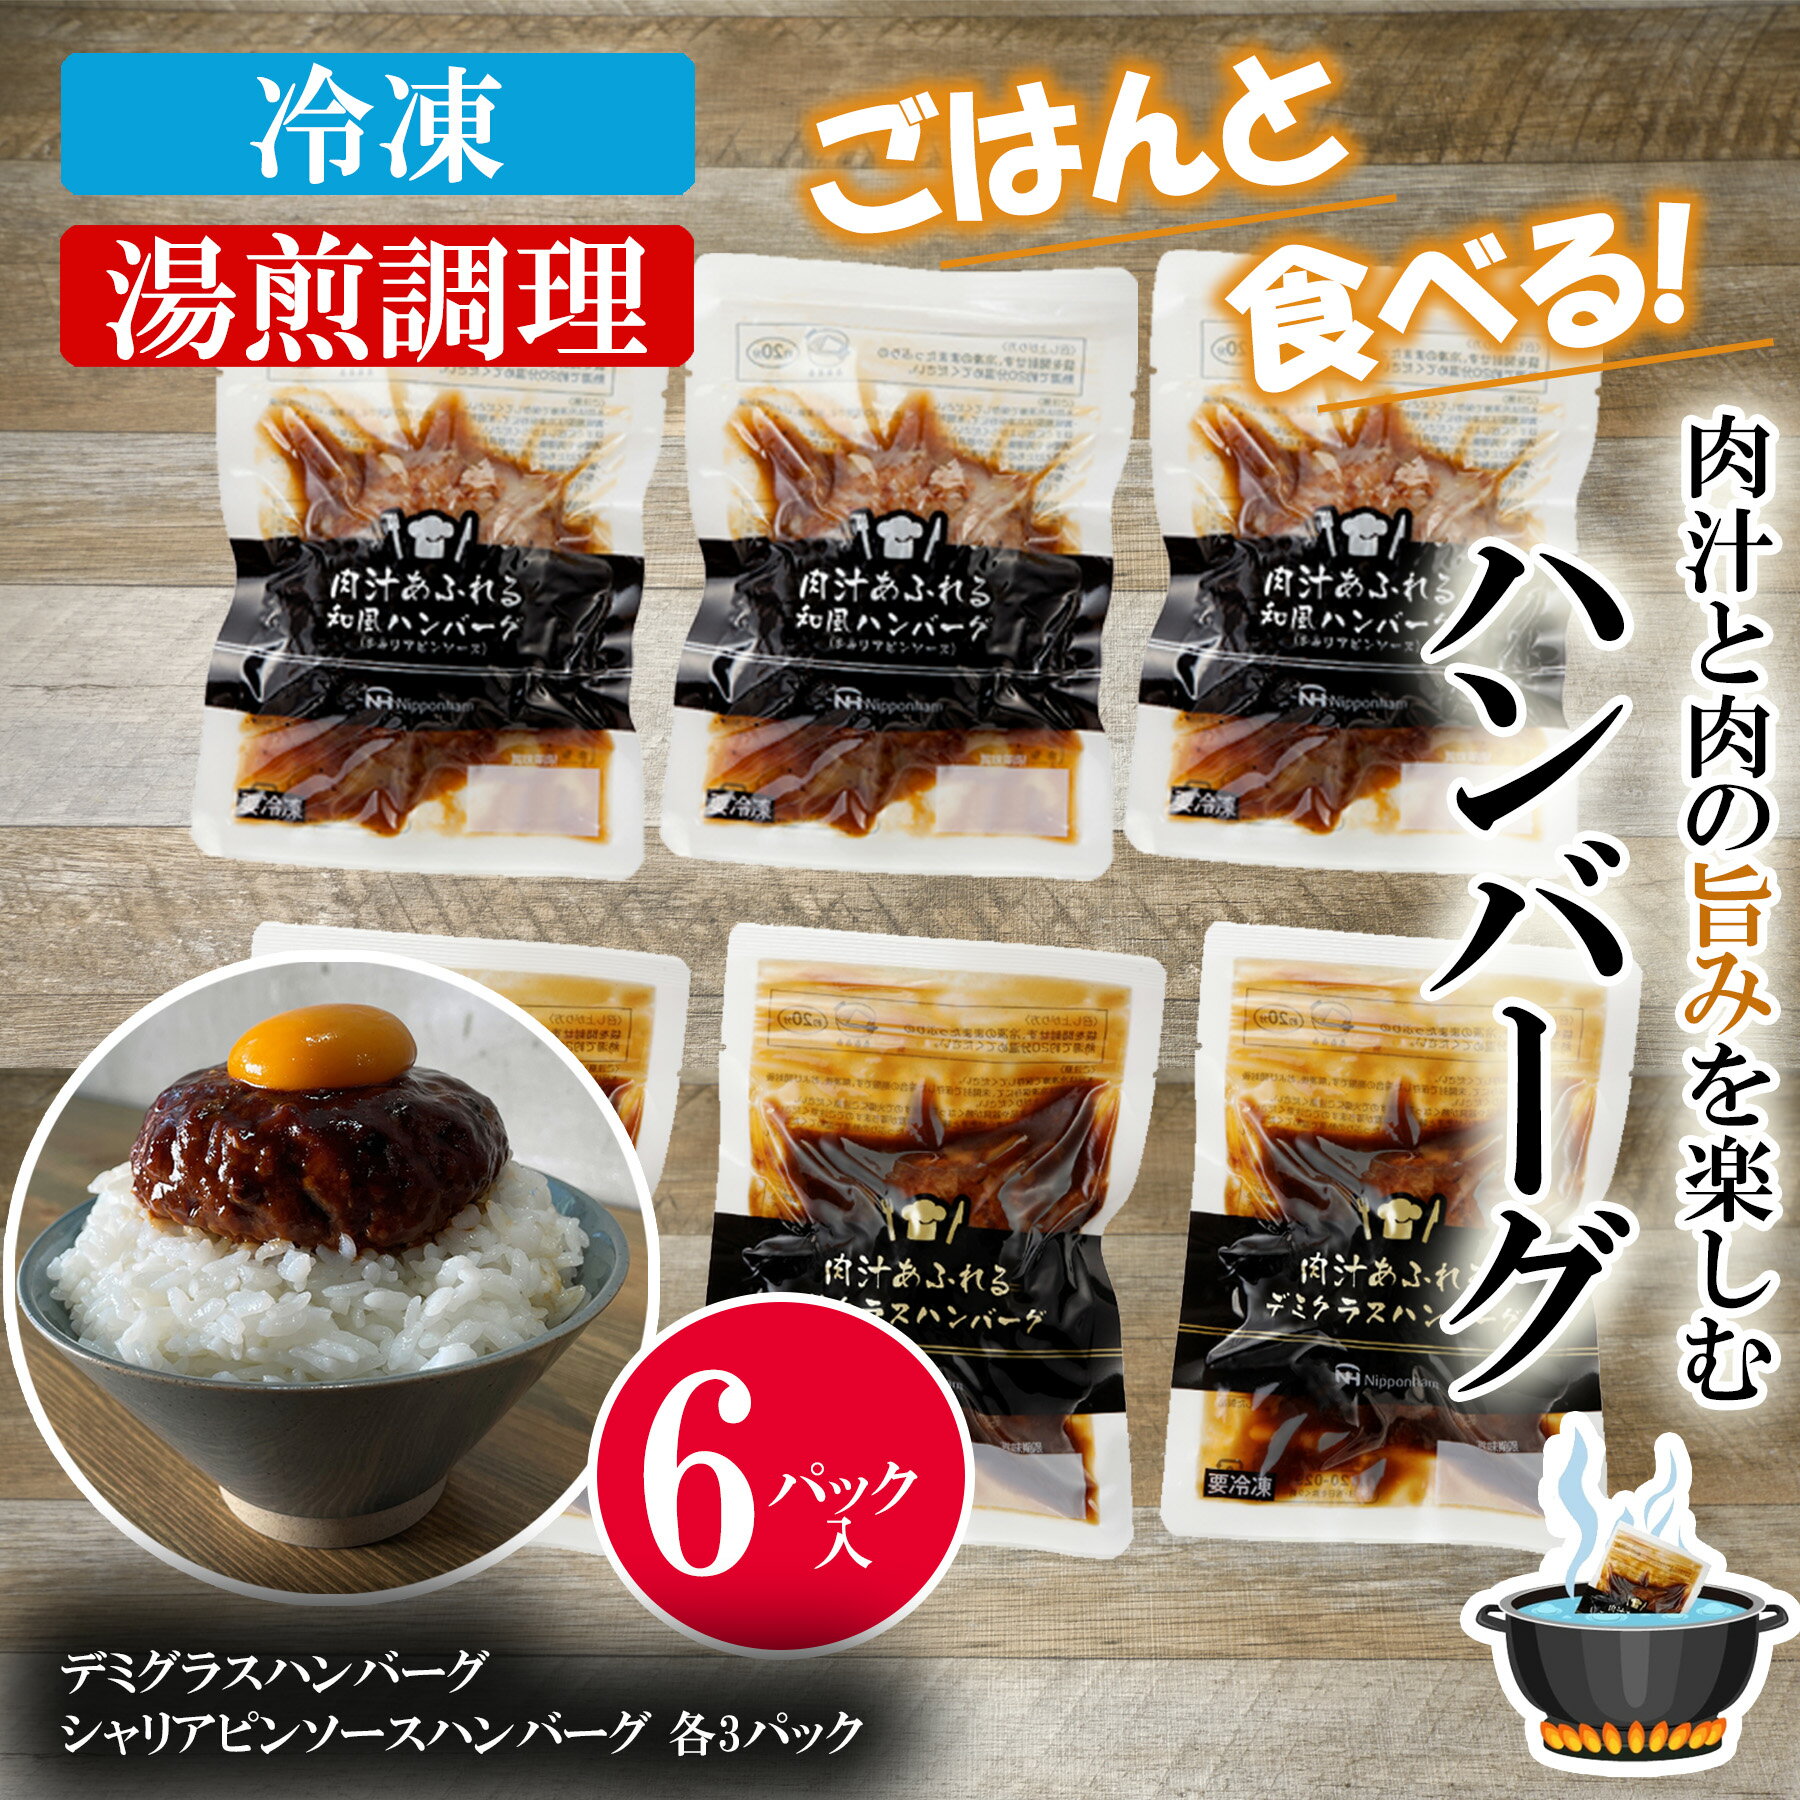 日本ハム 肉汁あふれる デミグラスハンバーグ 和風ハンバーグ 2種各3個セット 冷凍 化粧箱入り お歳暮 ギフトの商品画像